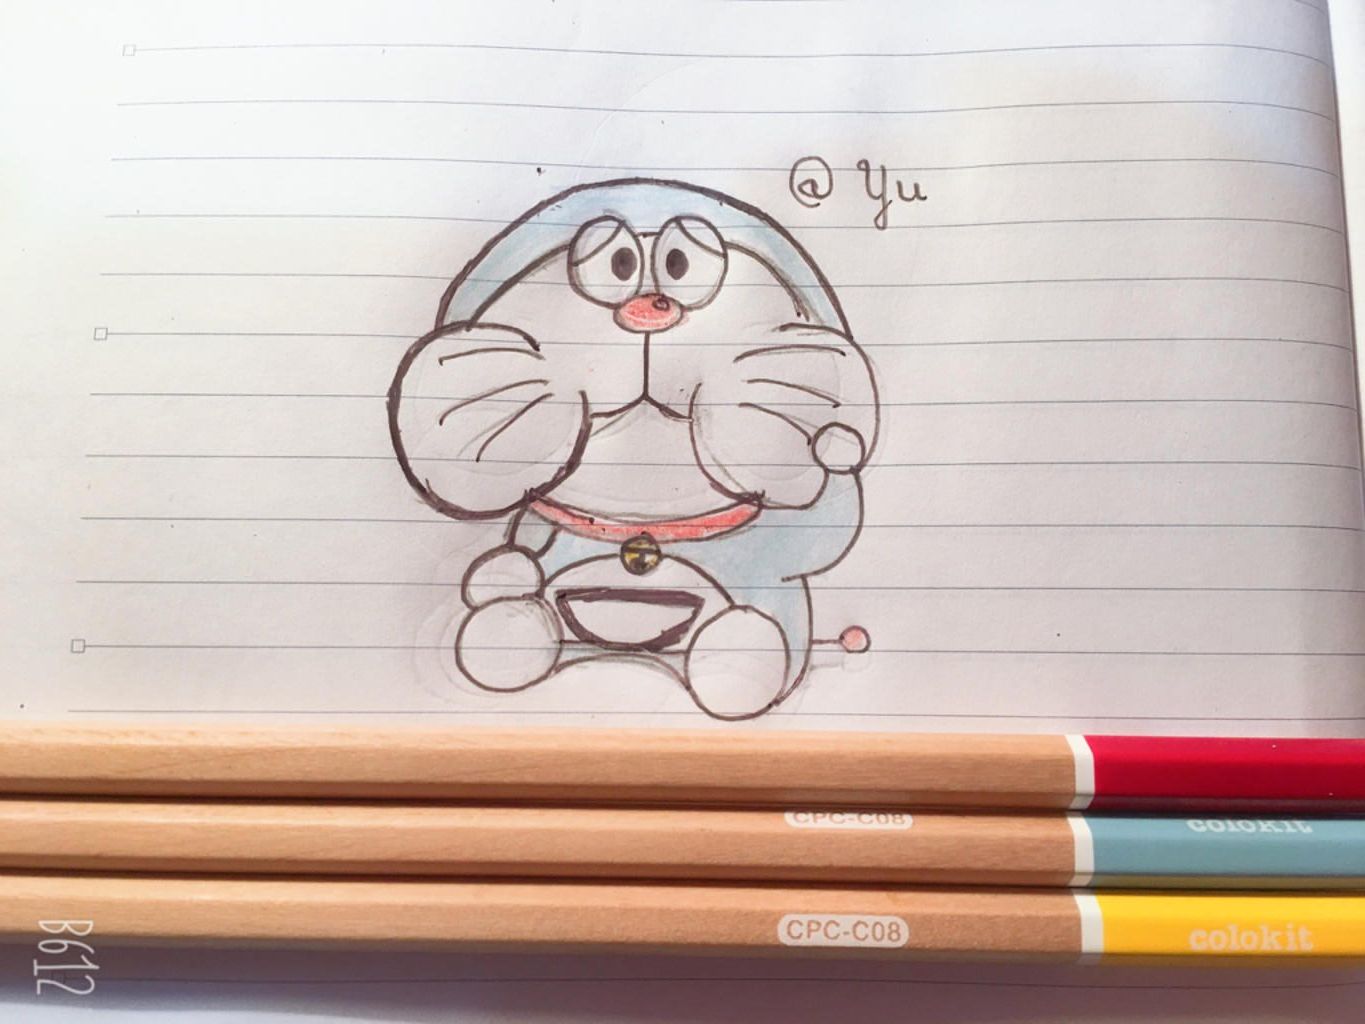 111+ Hình Vẽ Doraemon, Cách Vẽ Doremon Cute Cực Đơn Giản